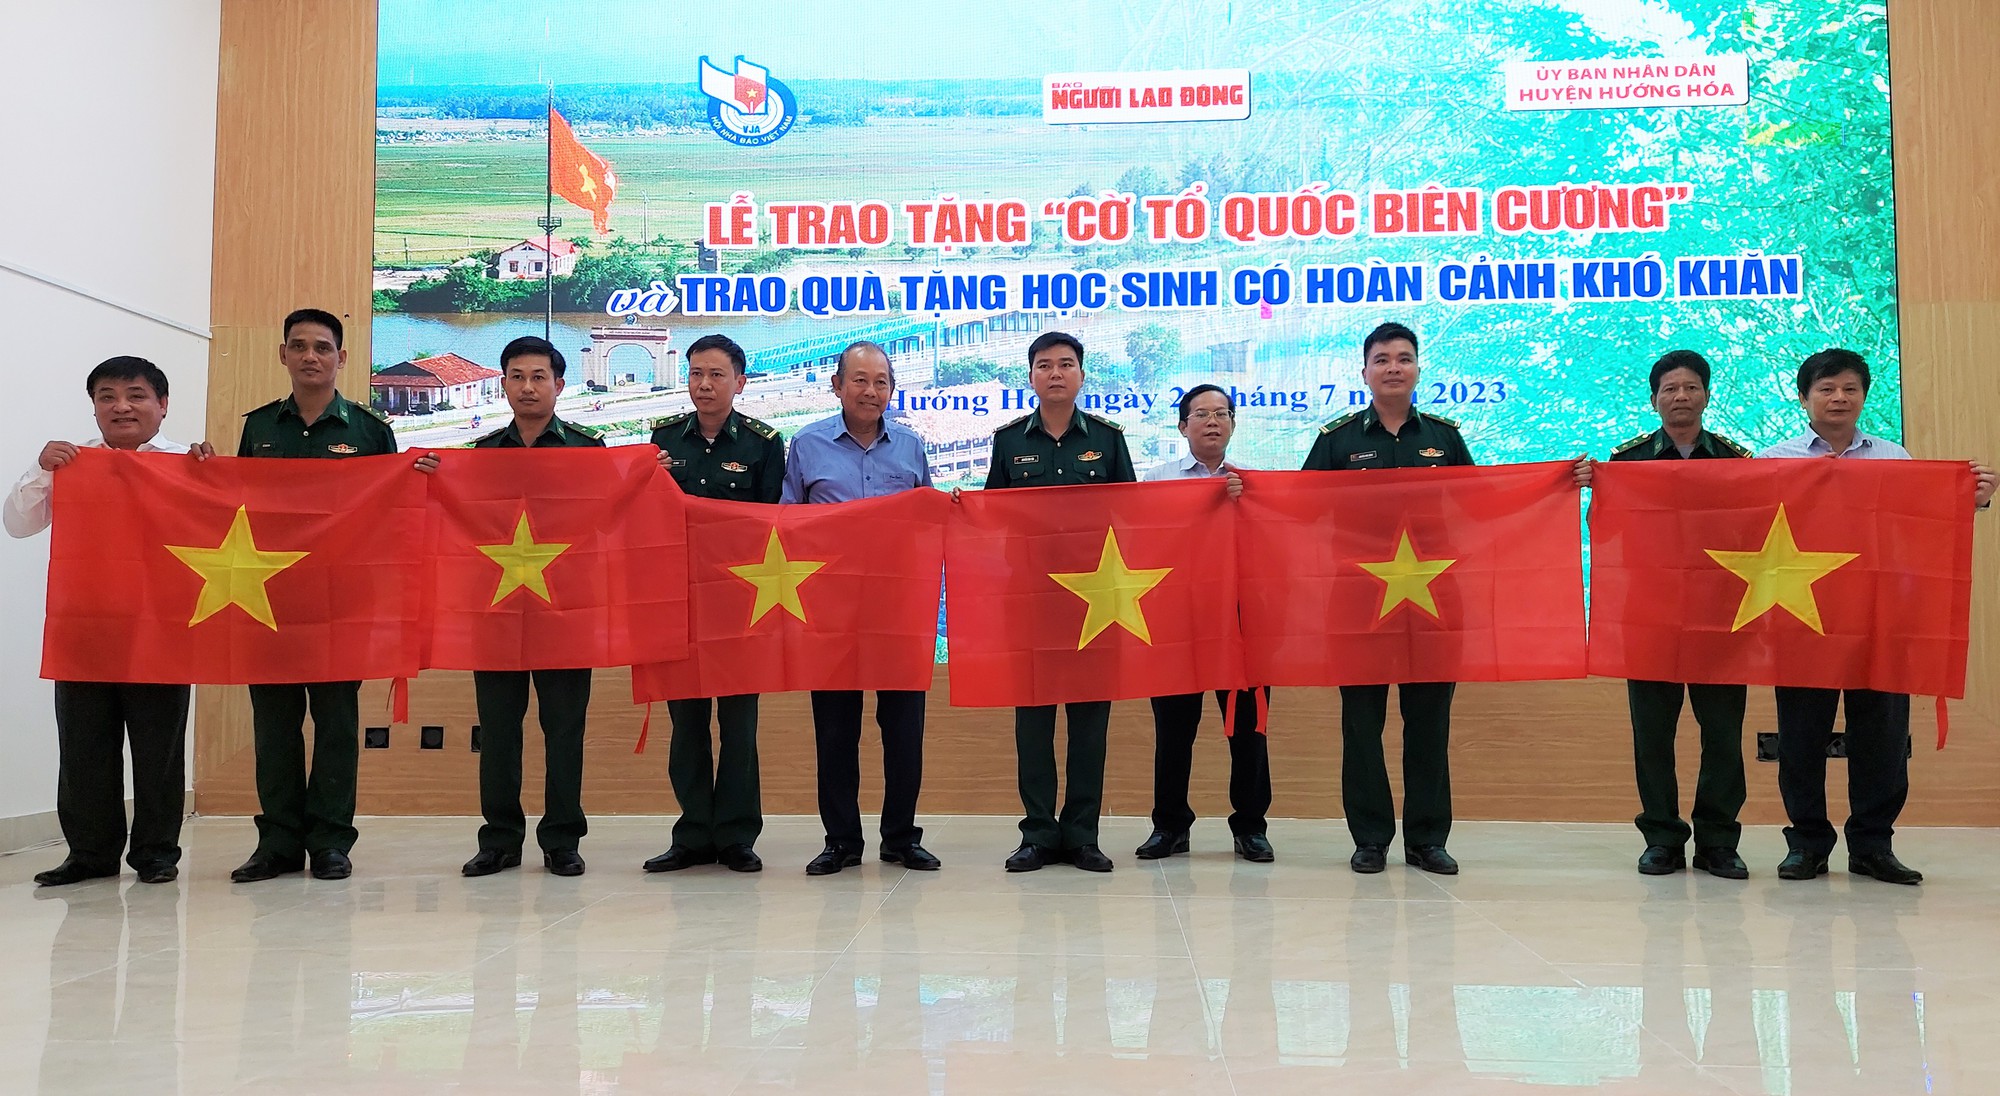 Trao cờ Tổ quốc, tặng nhiều suất học bổng ở vùng biên Quảng Trị - Ảnh 2.